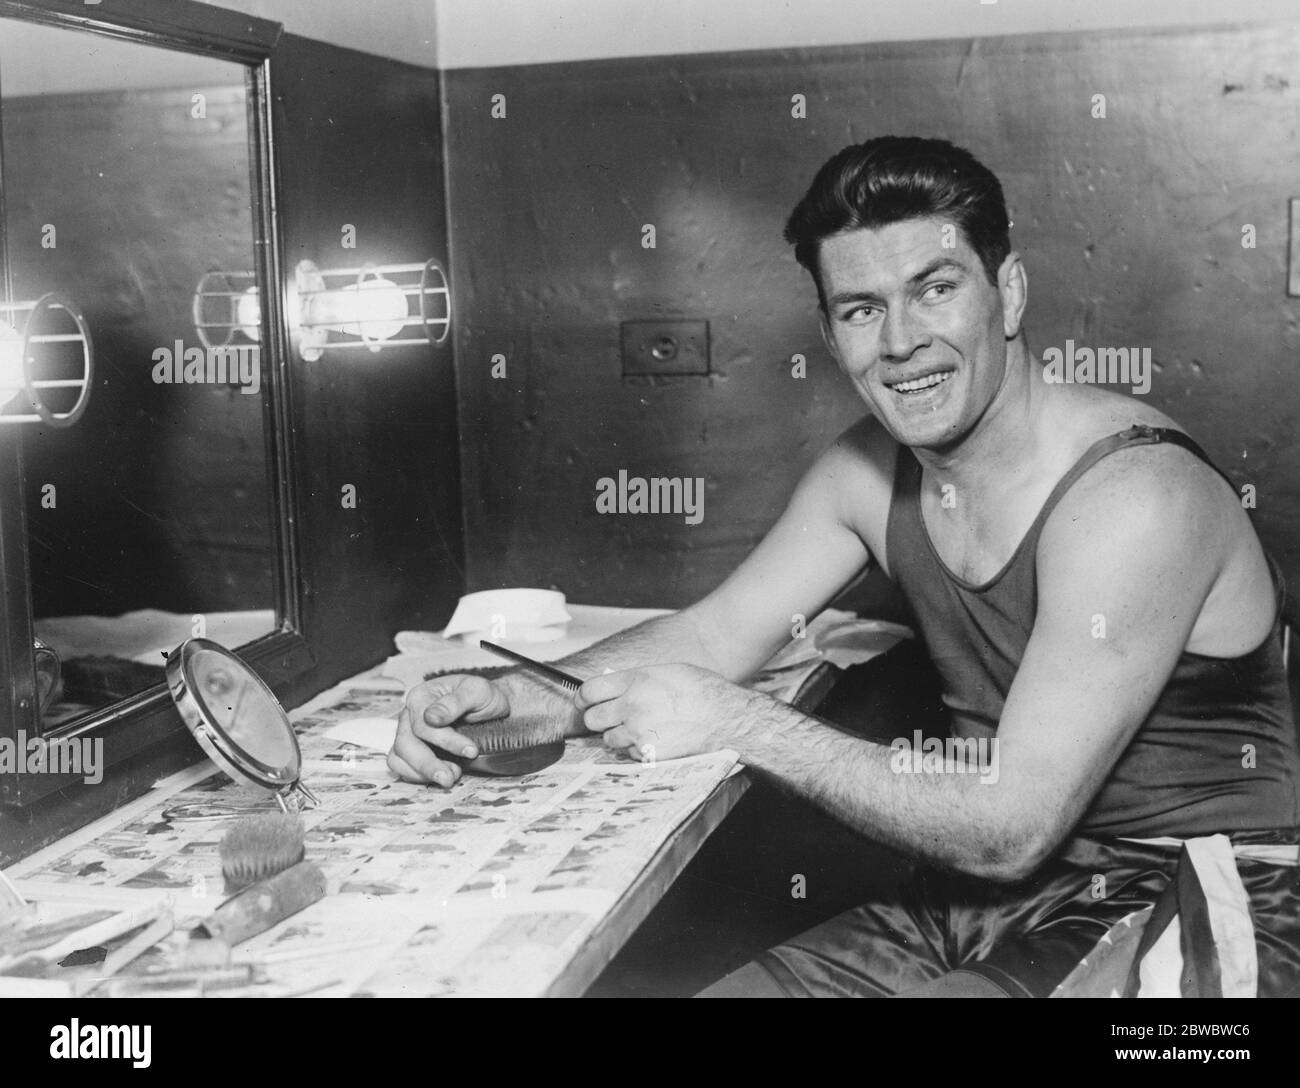 Il campione del mondo dei pesi massimi si imbarca in un tour di Vaudeville . Gene Tunney ha sottolineato il lato artistico del suo prowese pugilistico aprendo un impegno teatrale al Loew's state Theatre di New York . 7 dicembre 1926 Foto Stock